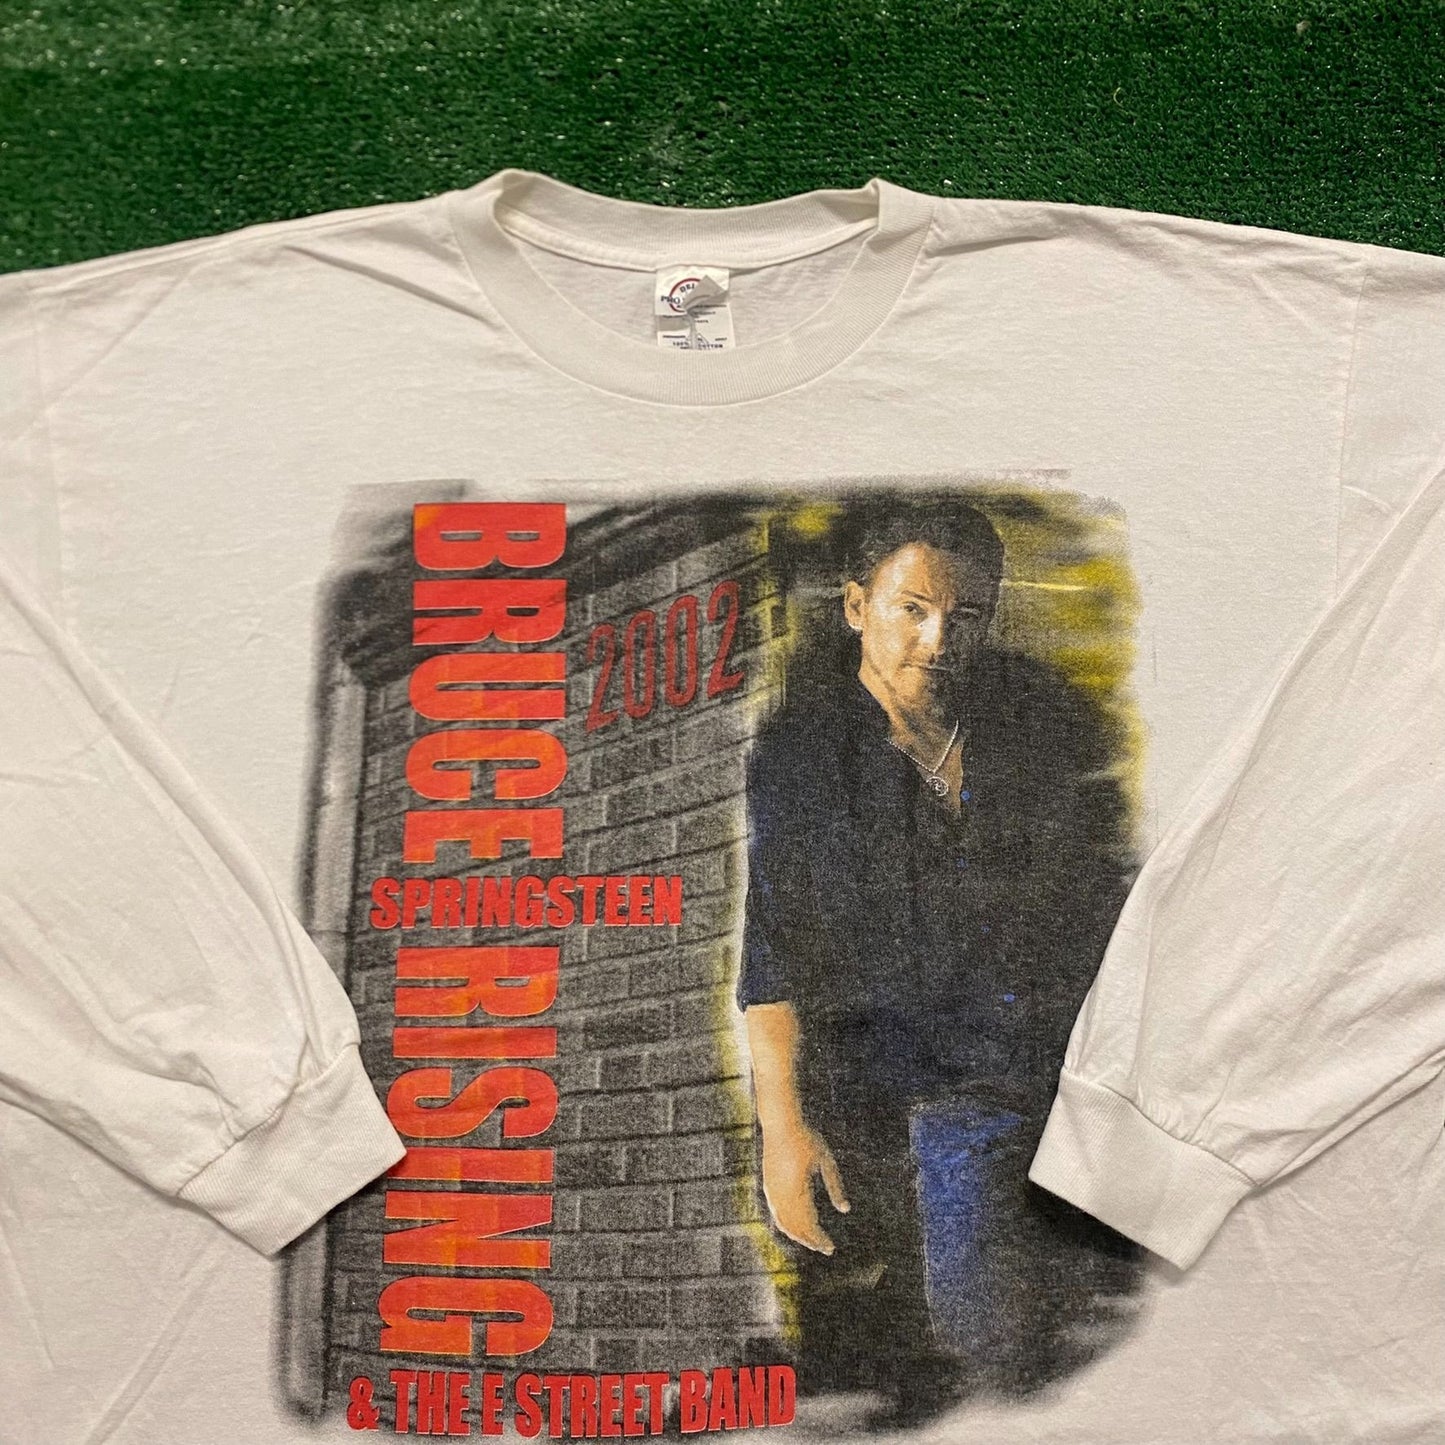 Bruce Springsteen Summer 2002 Vintage Rock Band T-Shirt